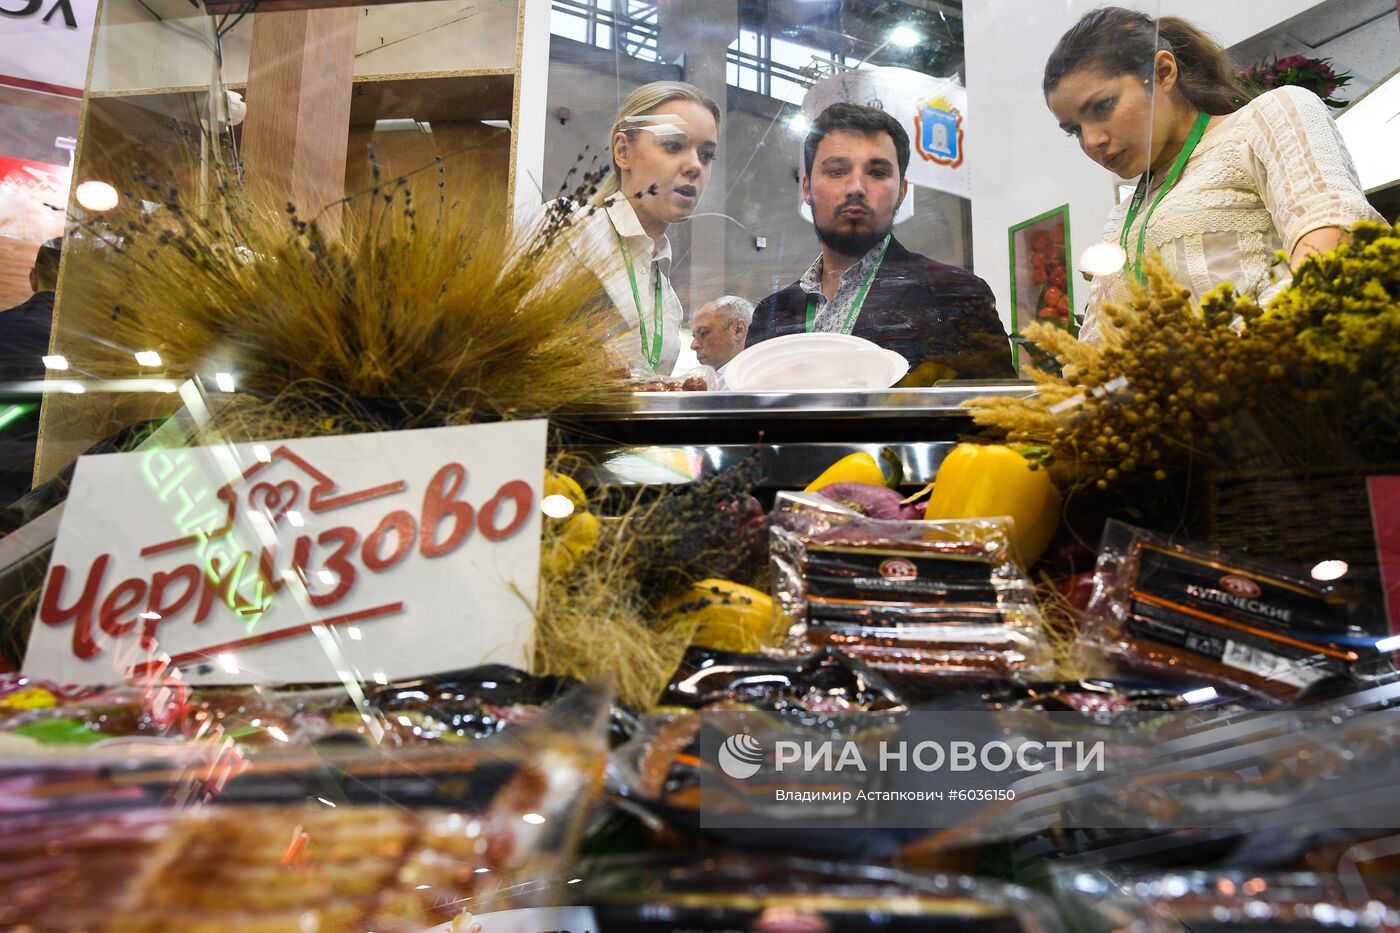 21-я Российская агропромышленная выставка "Золотая осень"